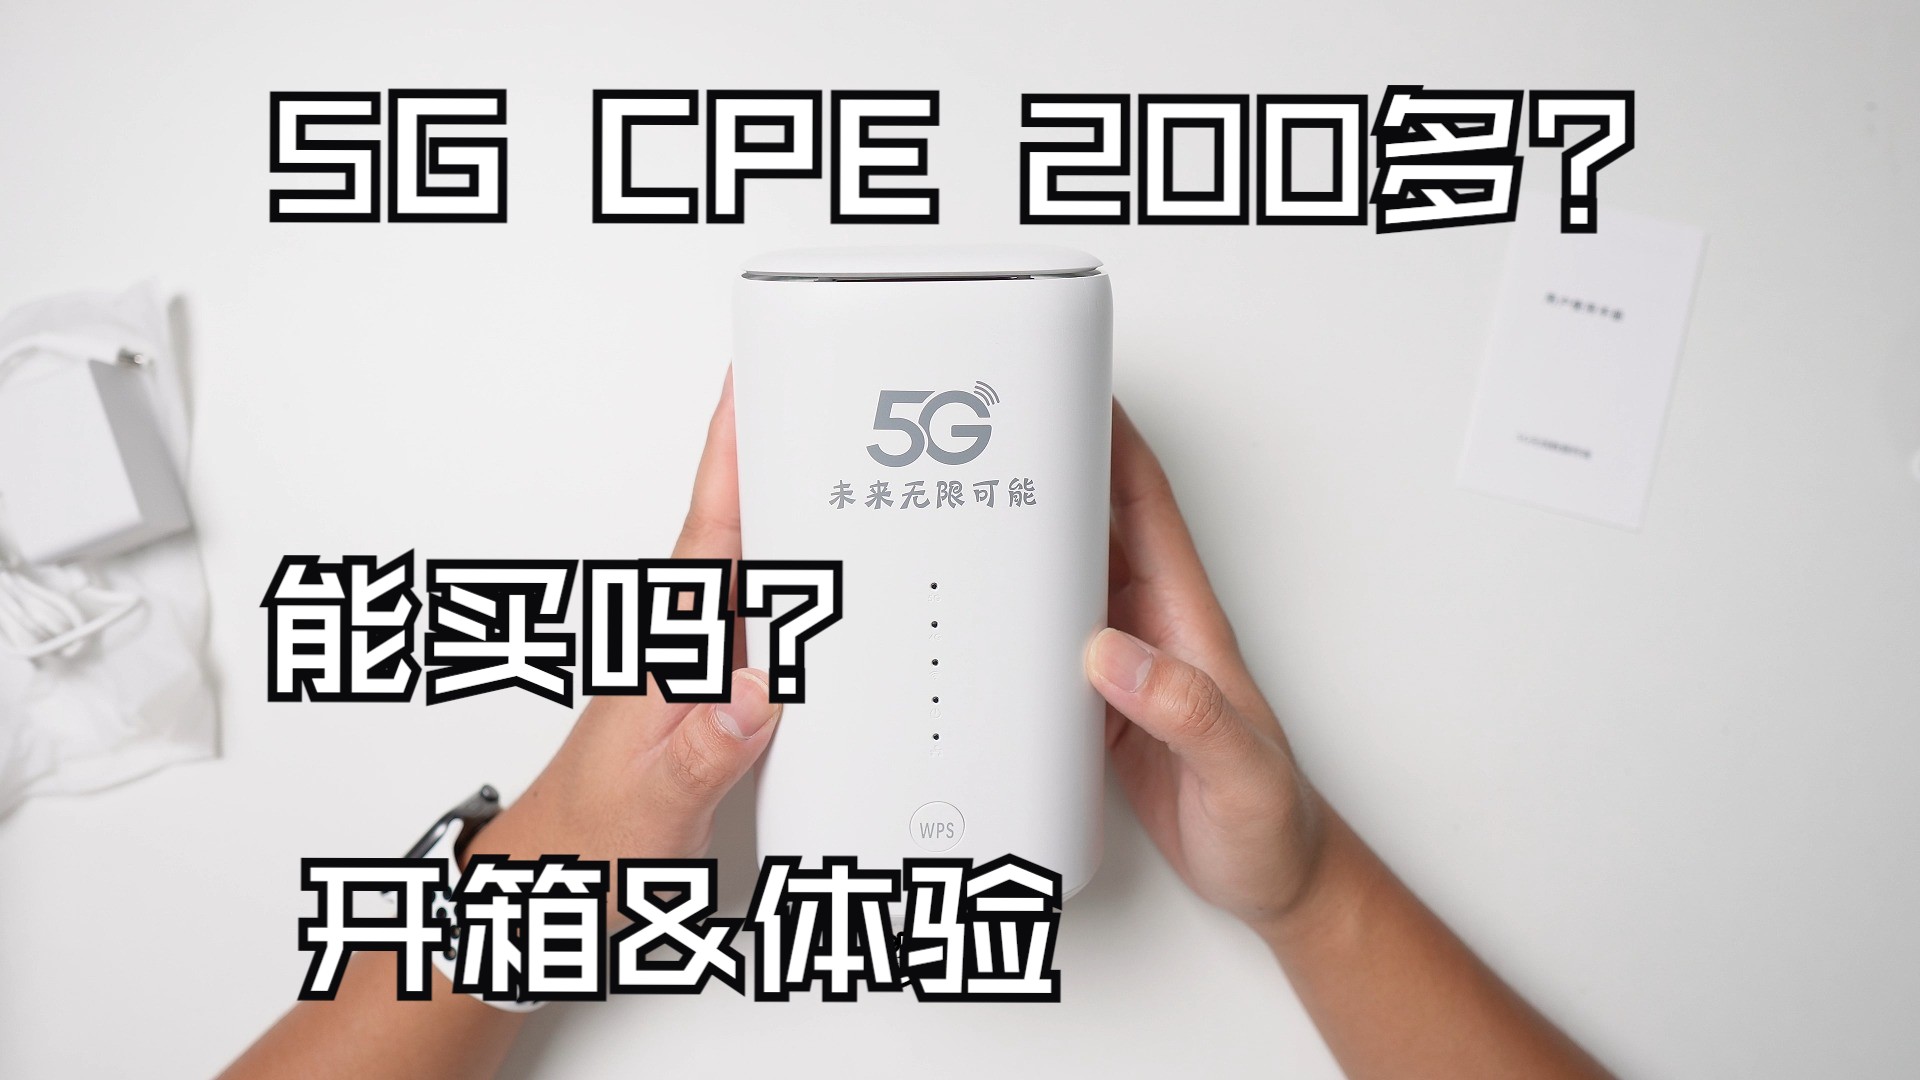 【入门5GCPE|开箱|体验】200多元的5G CPE能买吗？ 性能如何？ 网速&游戏延迟测试